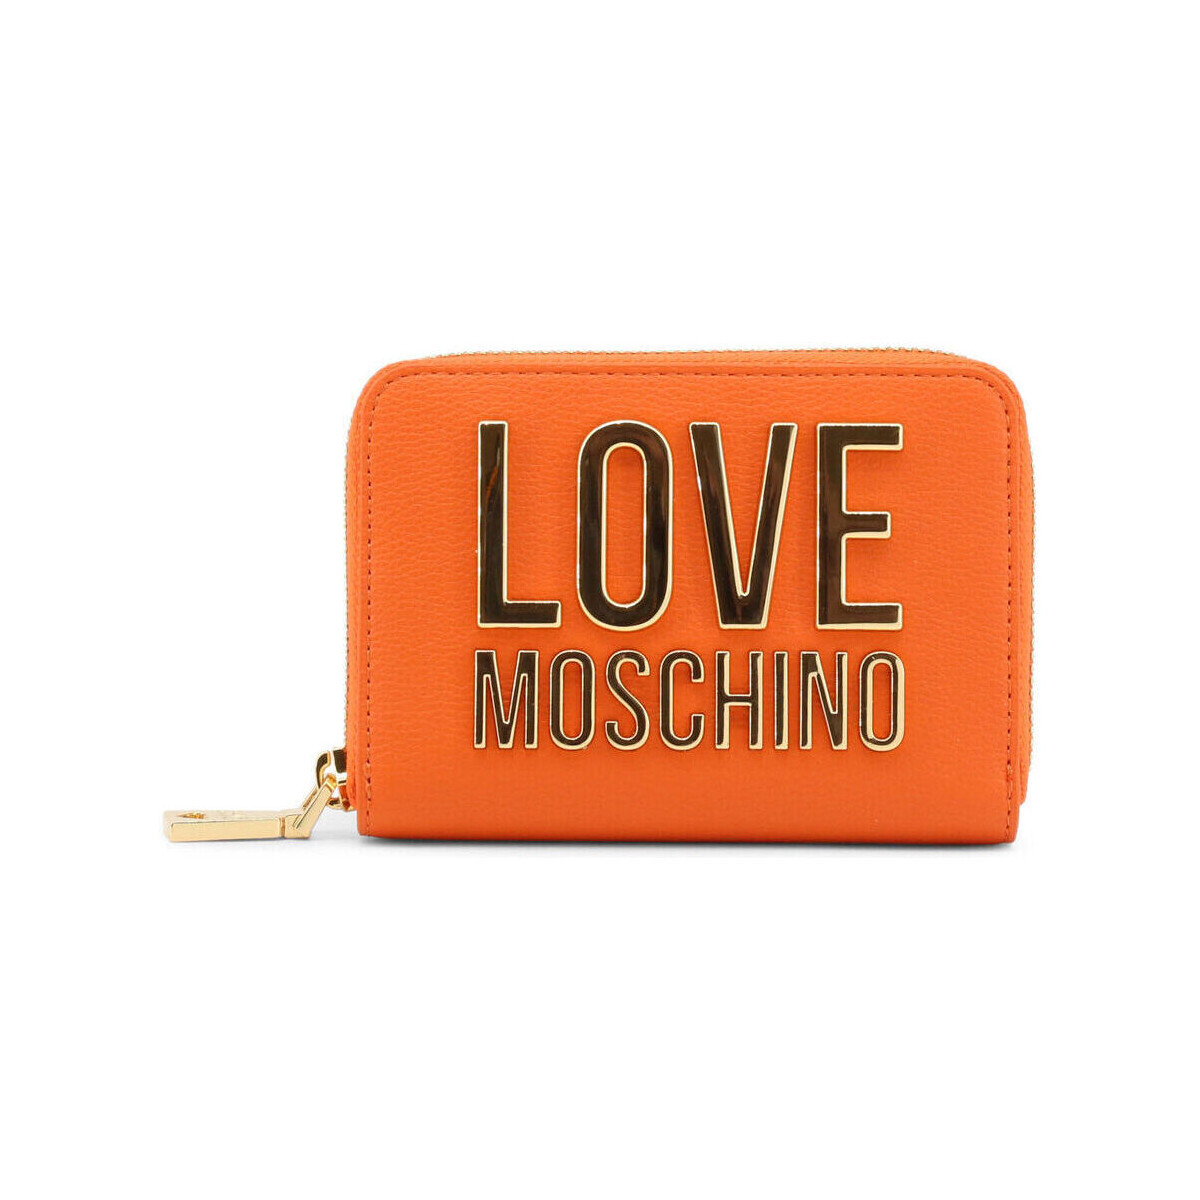 Love Moschino  - jc5613pp1gli0  Oranžová